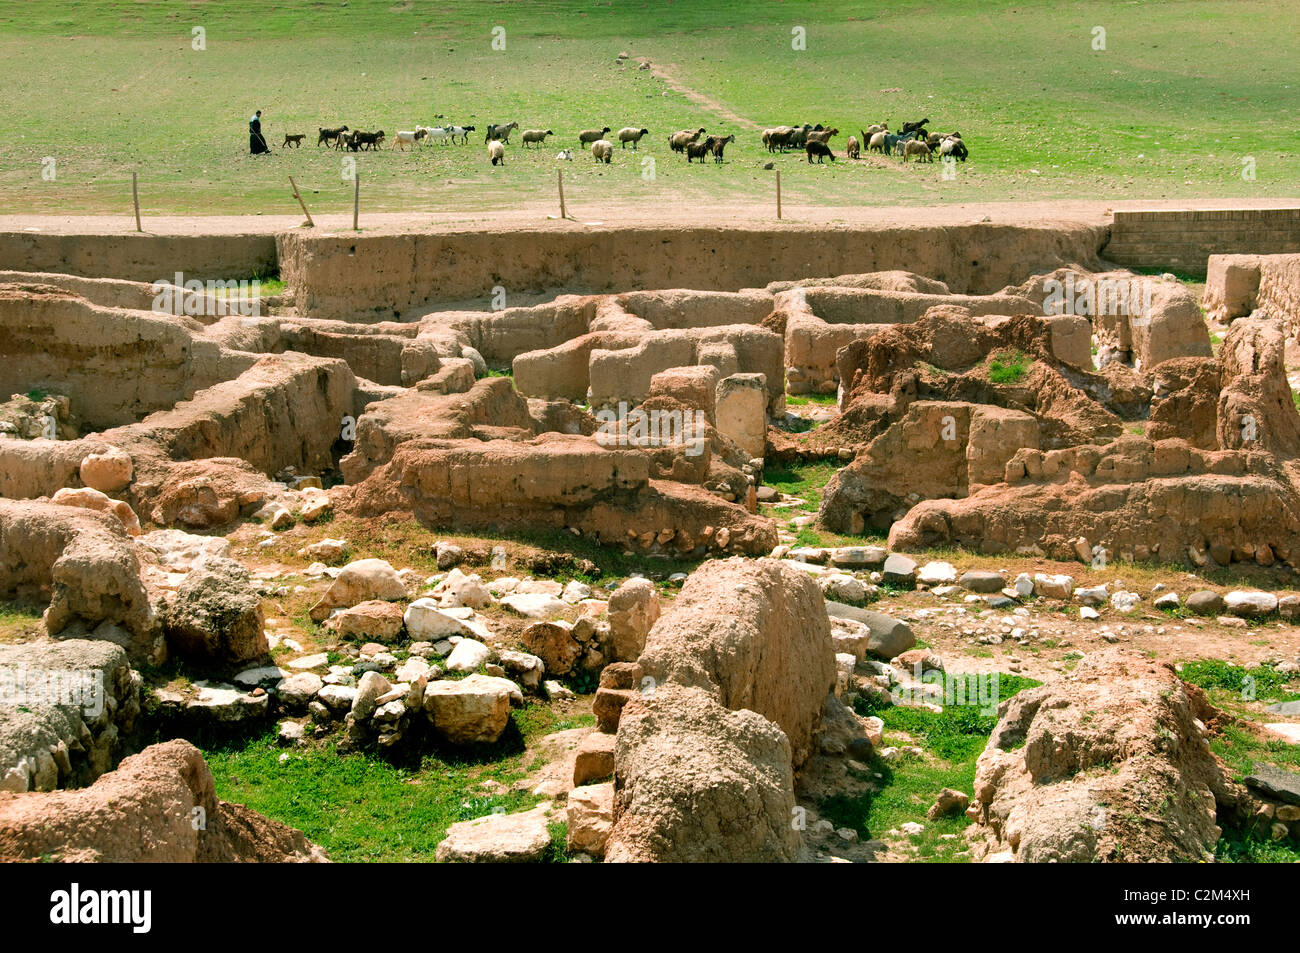 Ebla Siria Aleppo 3000 BC - 1650 BC 20.000 tavolette cuneiformi trovato ci lingua semitica correlati siriano Akkadico Tell Mardikh Foto Stock